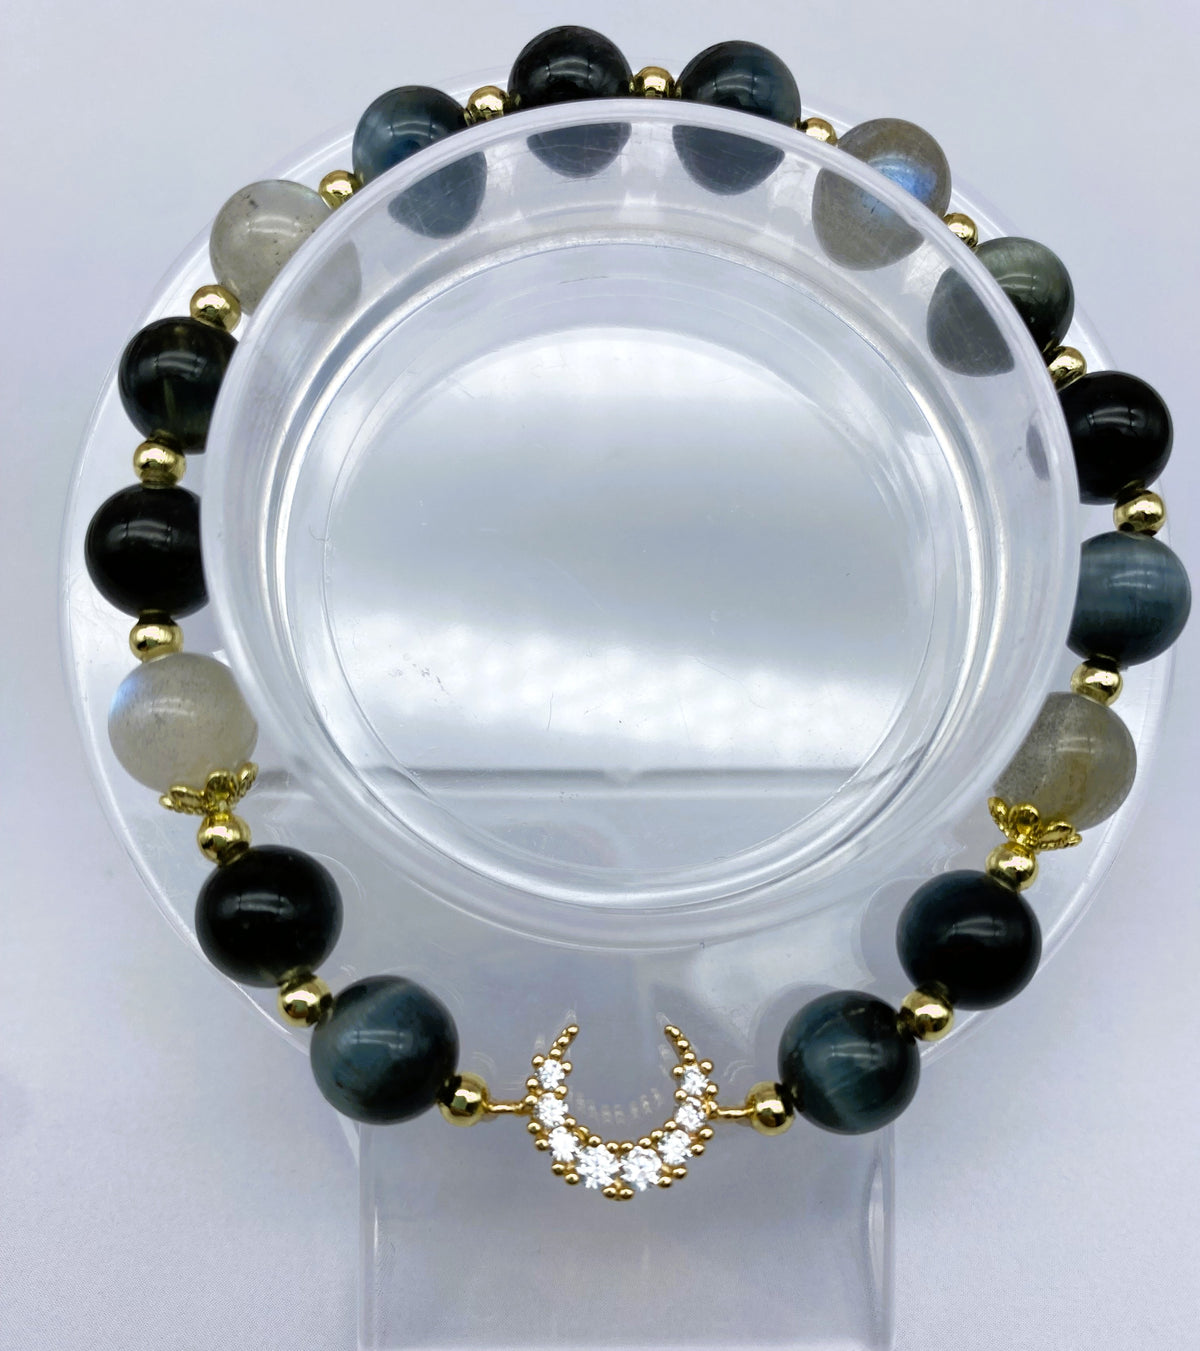 $19.99 VIP SUPER BOMB DESIGN Gorgeous Gemstone Beaded Bracelet for Men Women